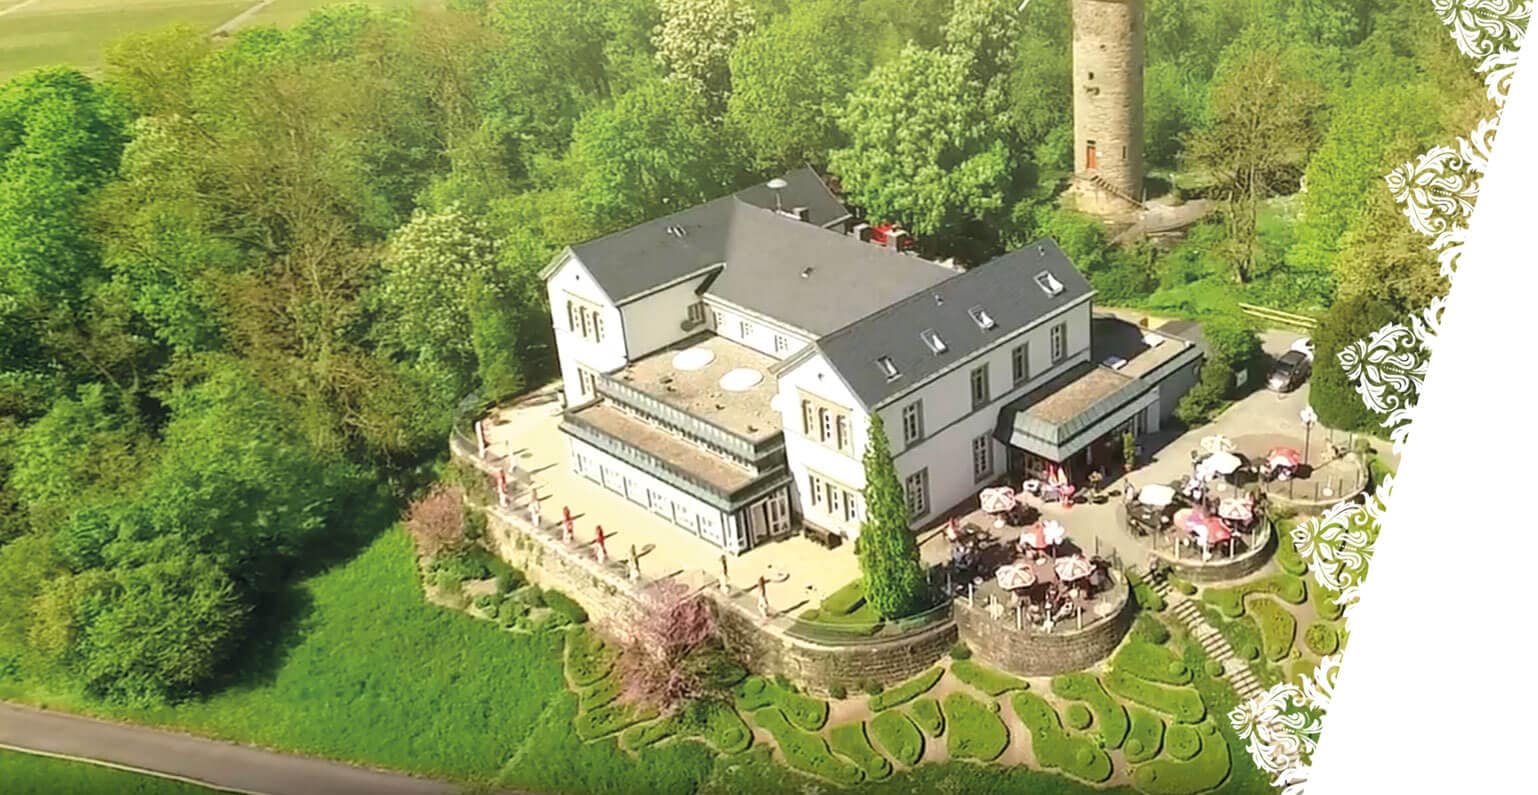 Luftaufnahme eines herrschaftlichen Hauses mit Außensitzplatz im Wartberg, Heilbronn, mitten im Grünen.